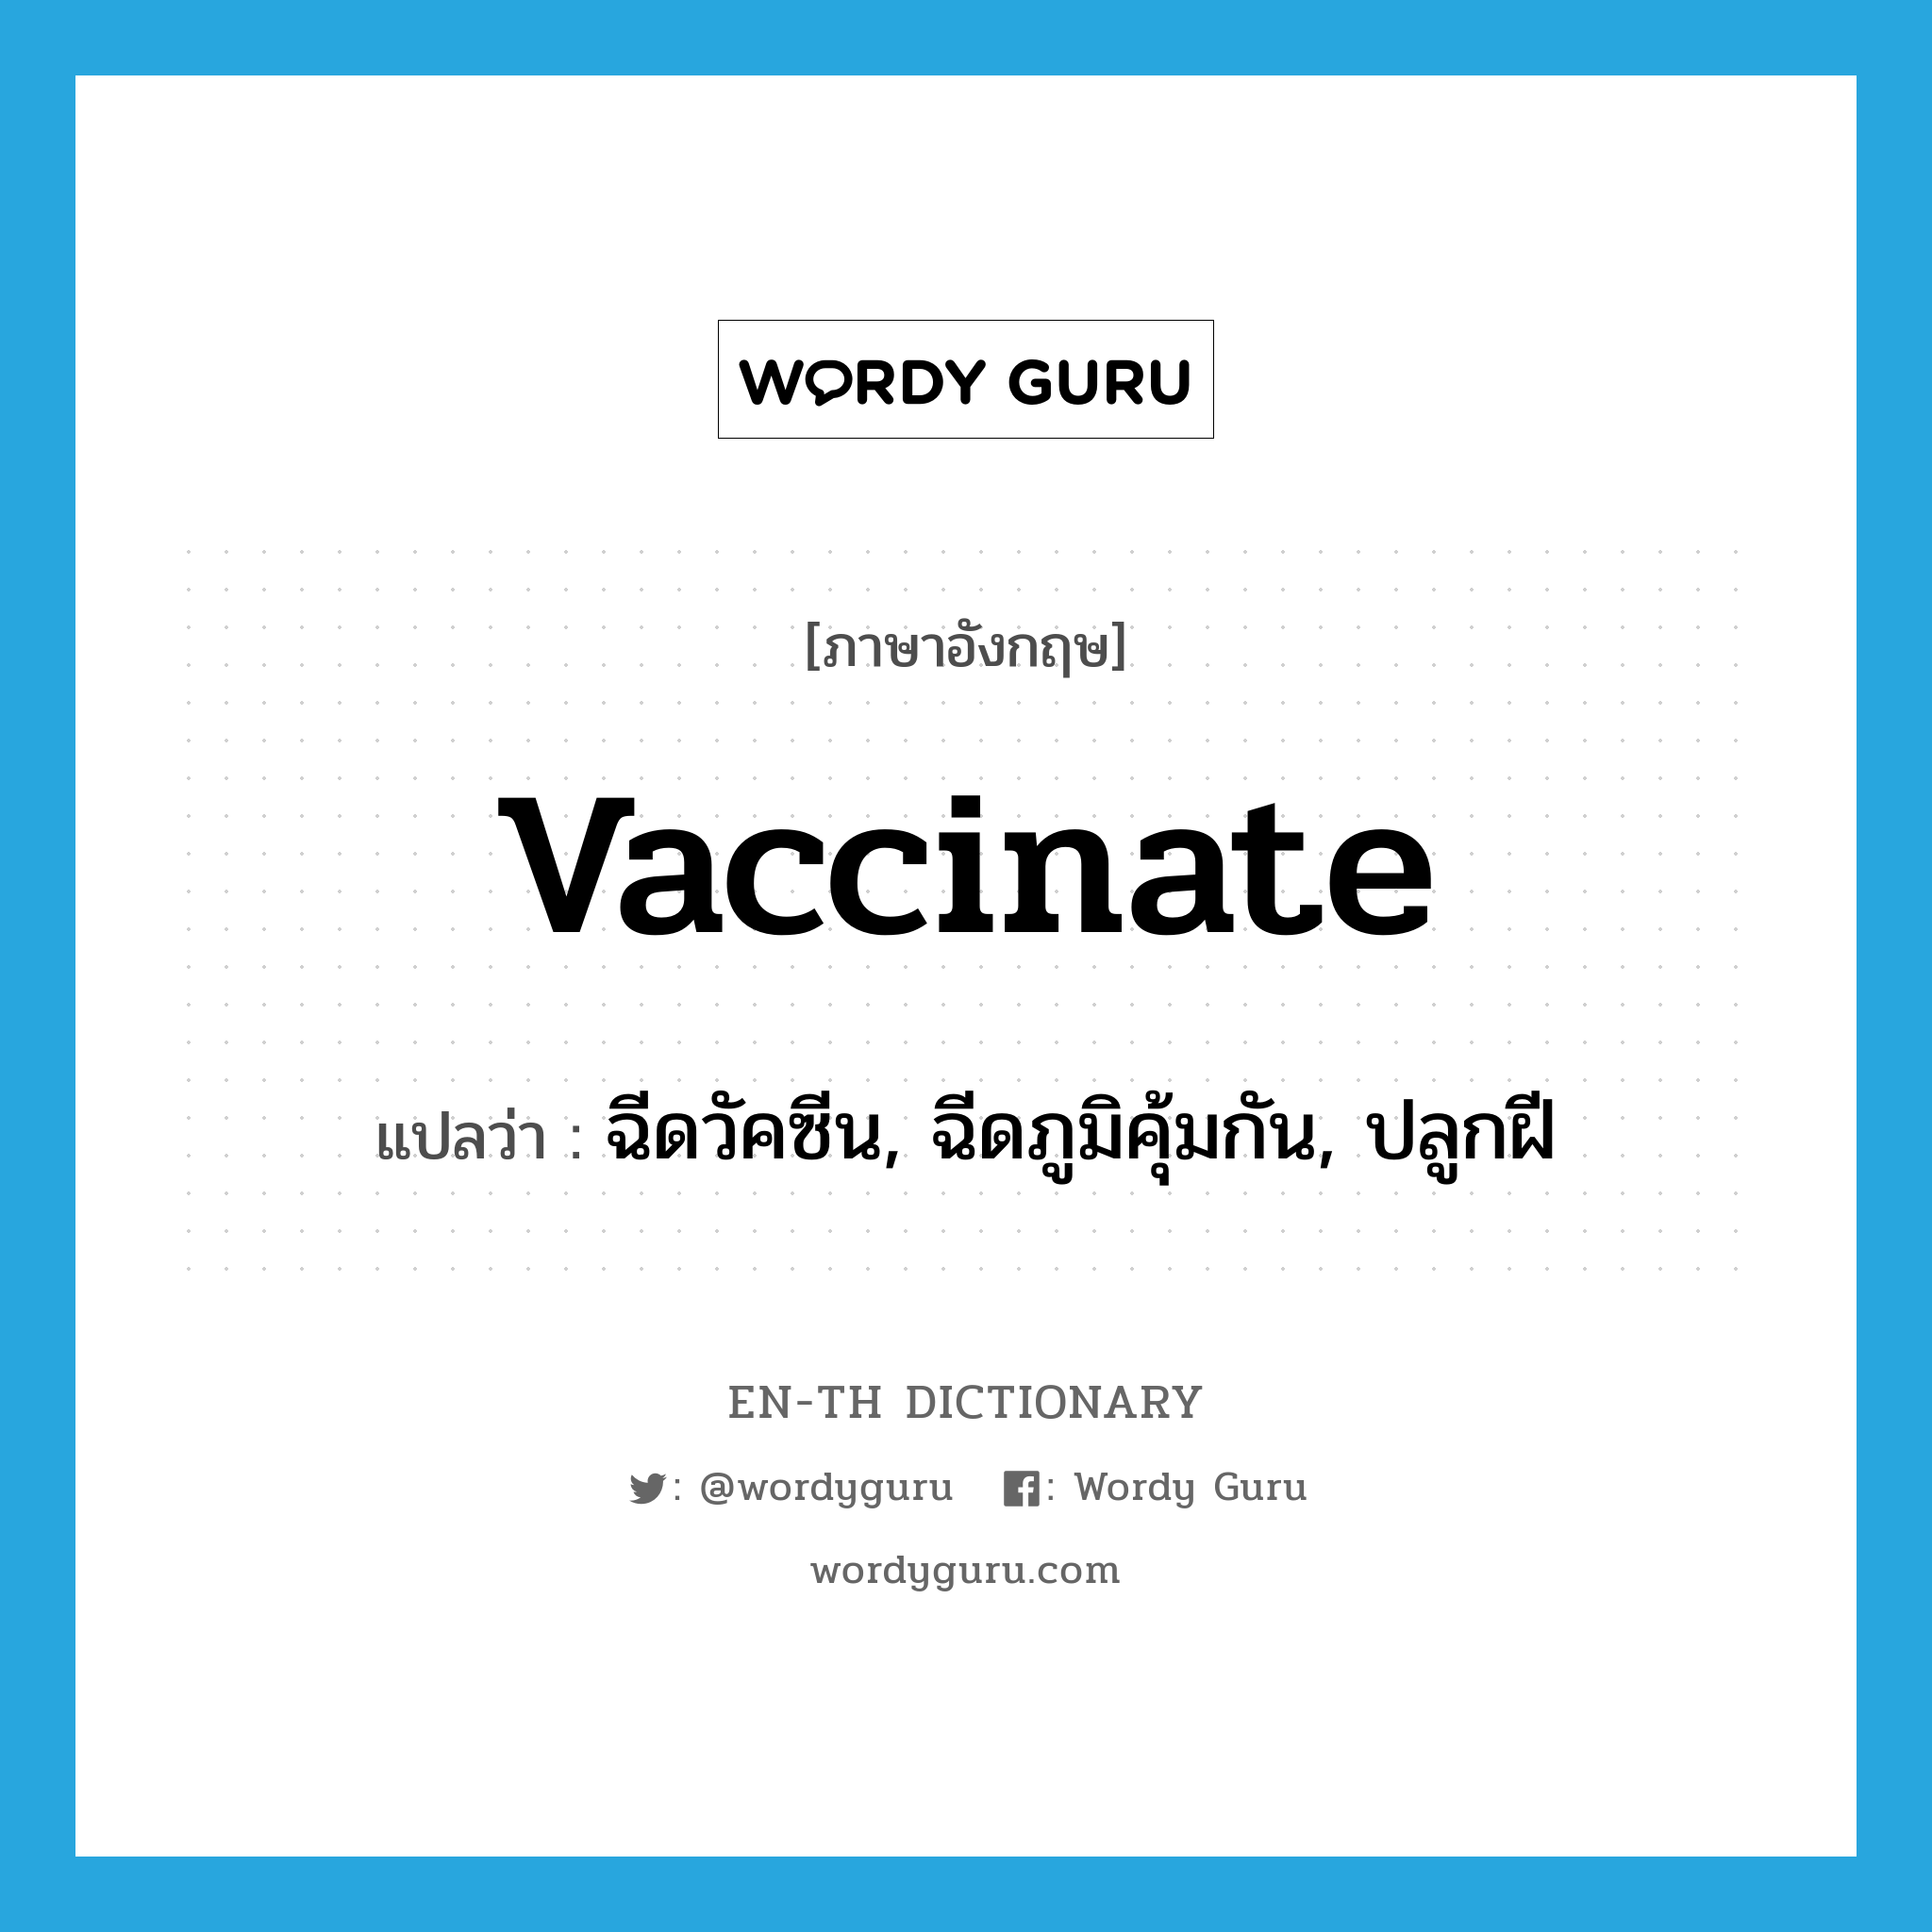 ฉีดวัคซีน, ฉีดภูมิคุ้มกัน, ปลูกฝี ภาษาอังกฤษ?, คำศัพท์ภาษาอังกฤษ ฉีดวัคซีน, ฉีดภูมิคุ้มกัน, ปลูกฝี แปลว่า vaccinate ประเภท VT หมวด VT